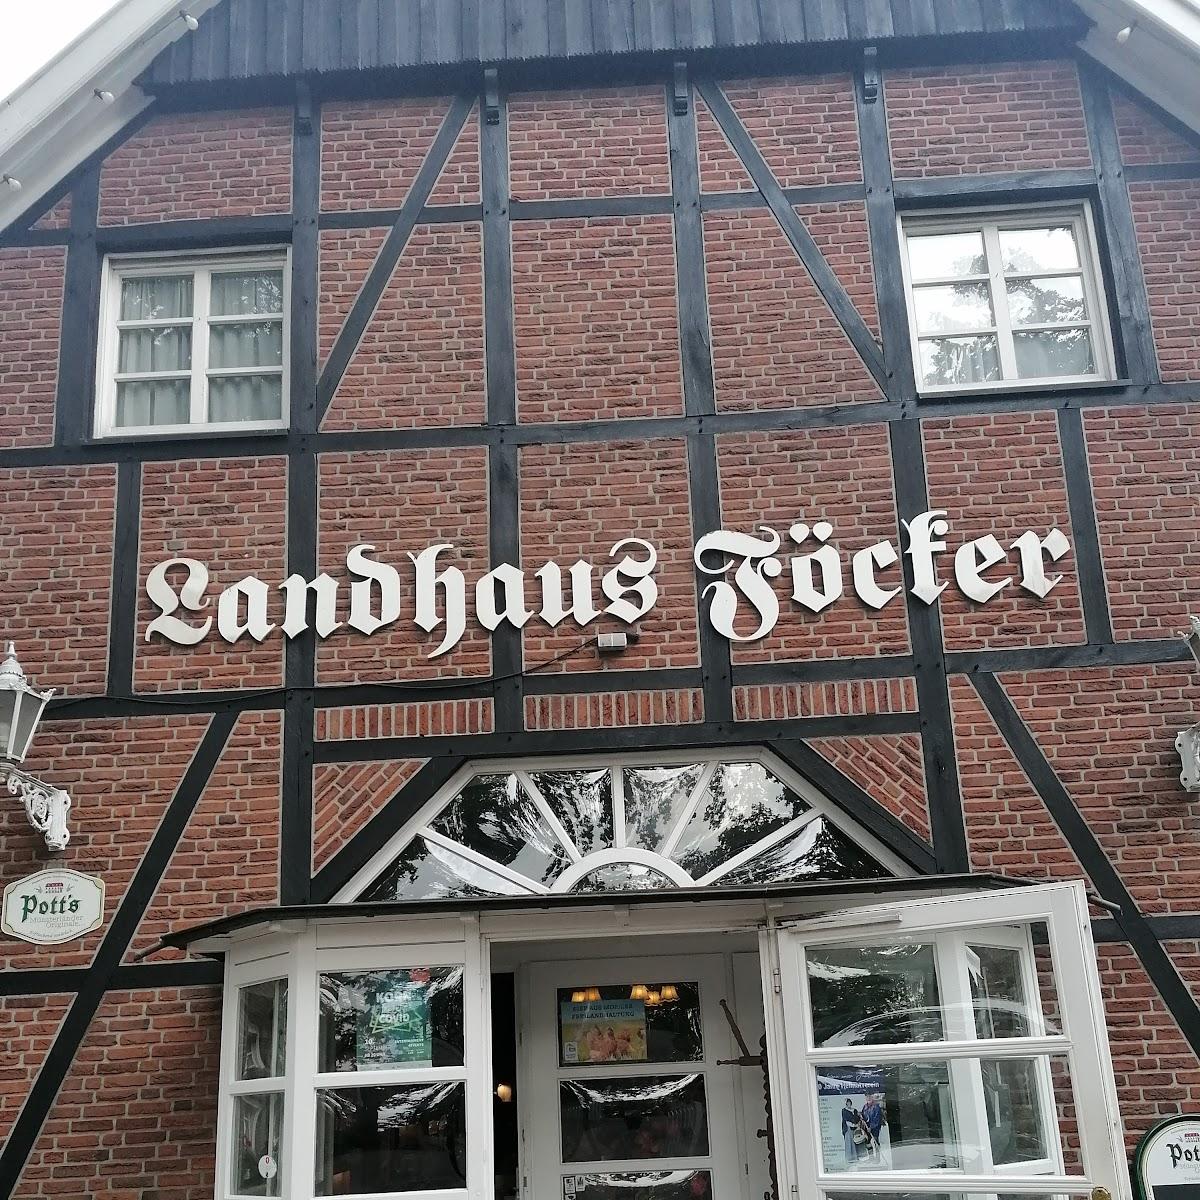 Restaurant "Landhaus Föcker" in Haltern am See